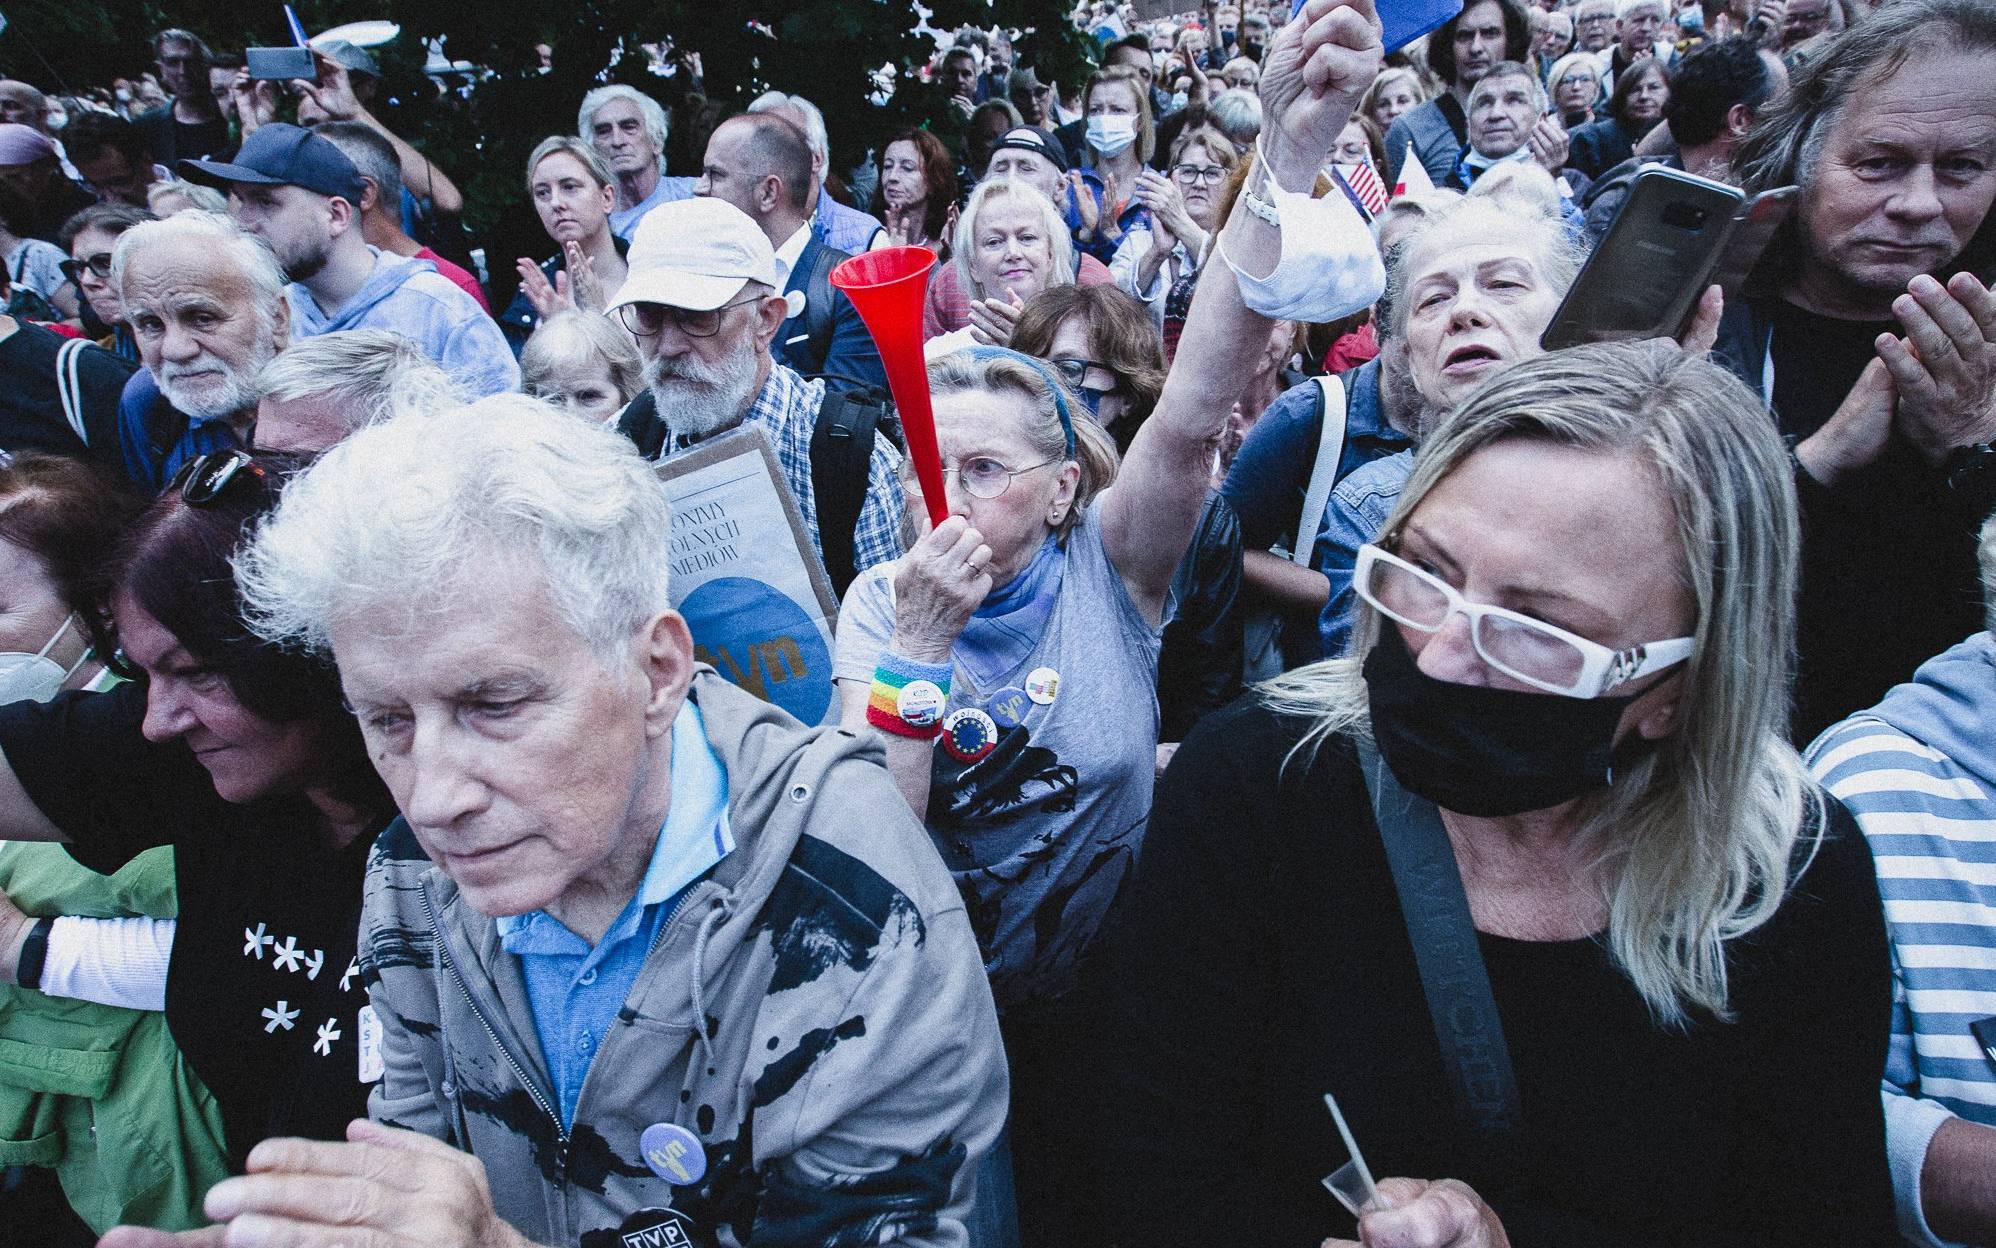 Warszawa, 10.08.2021. Protest przeciw lex TVN pod Sejmem